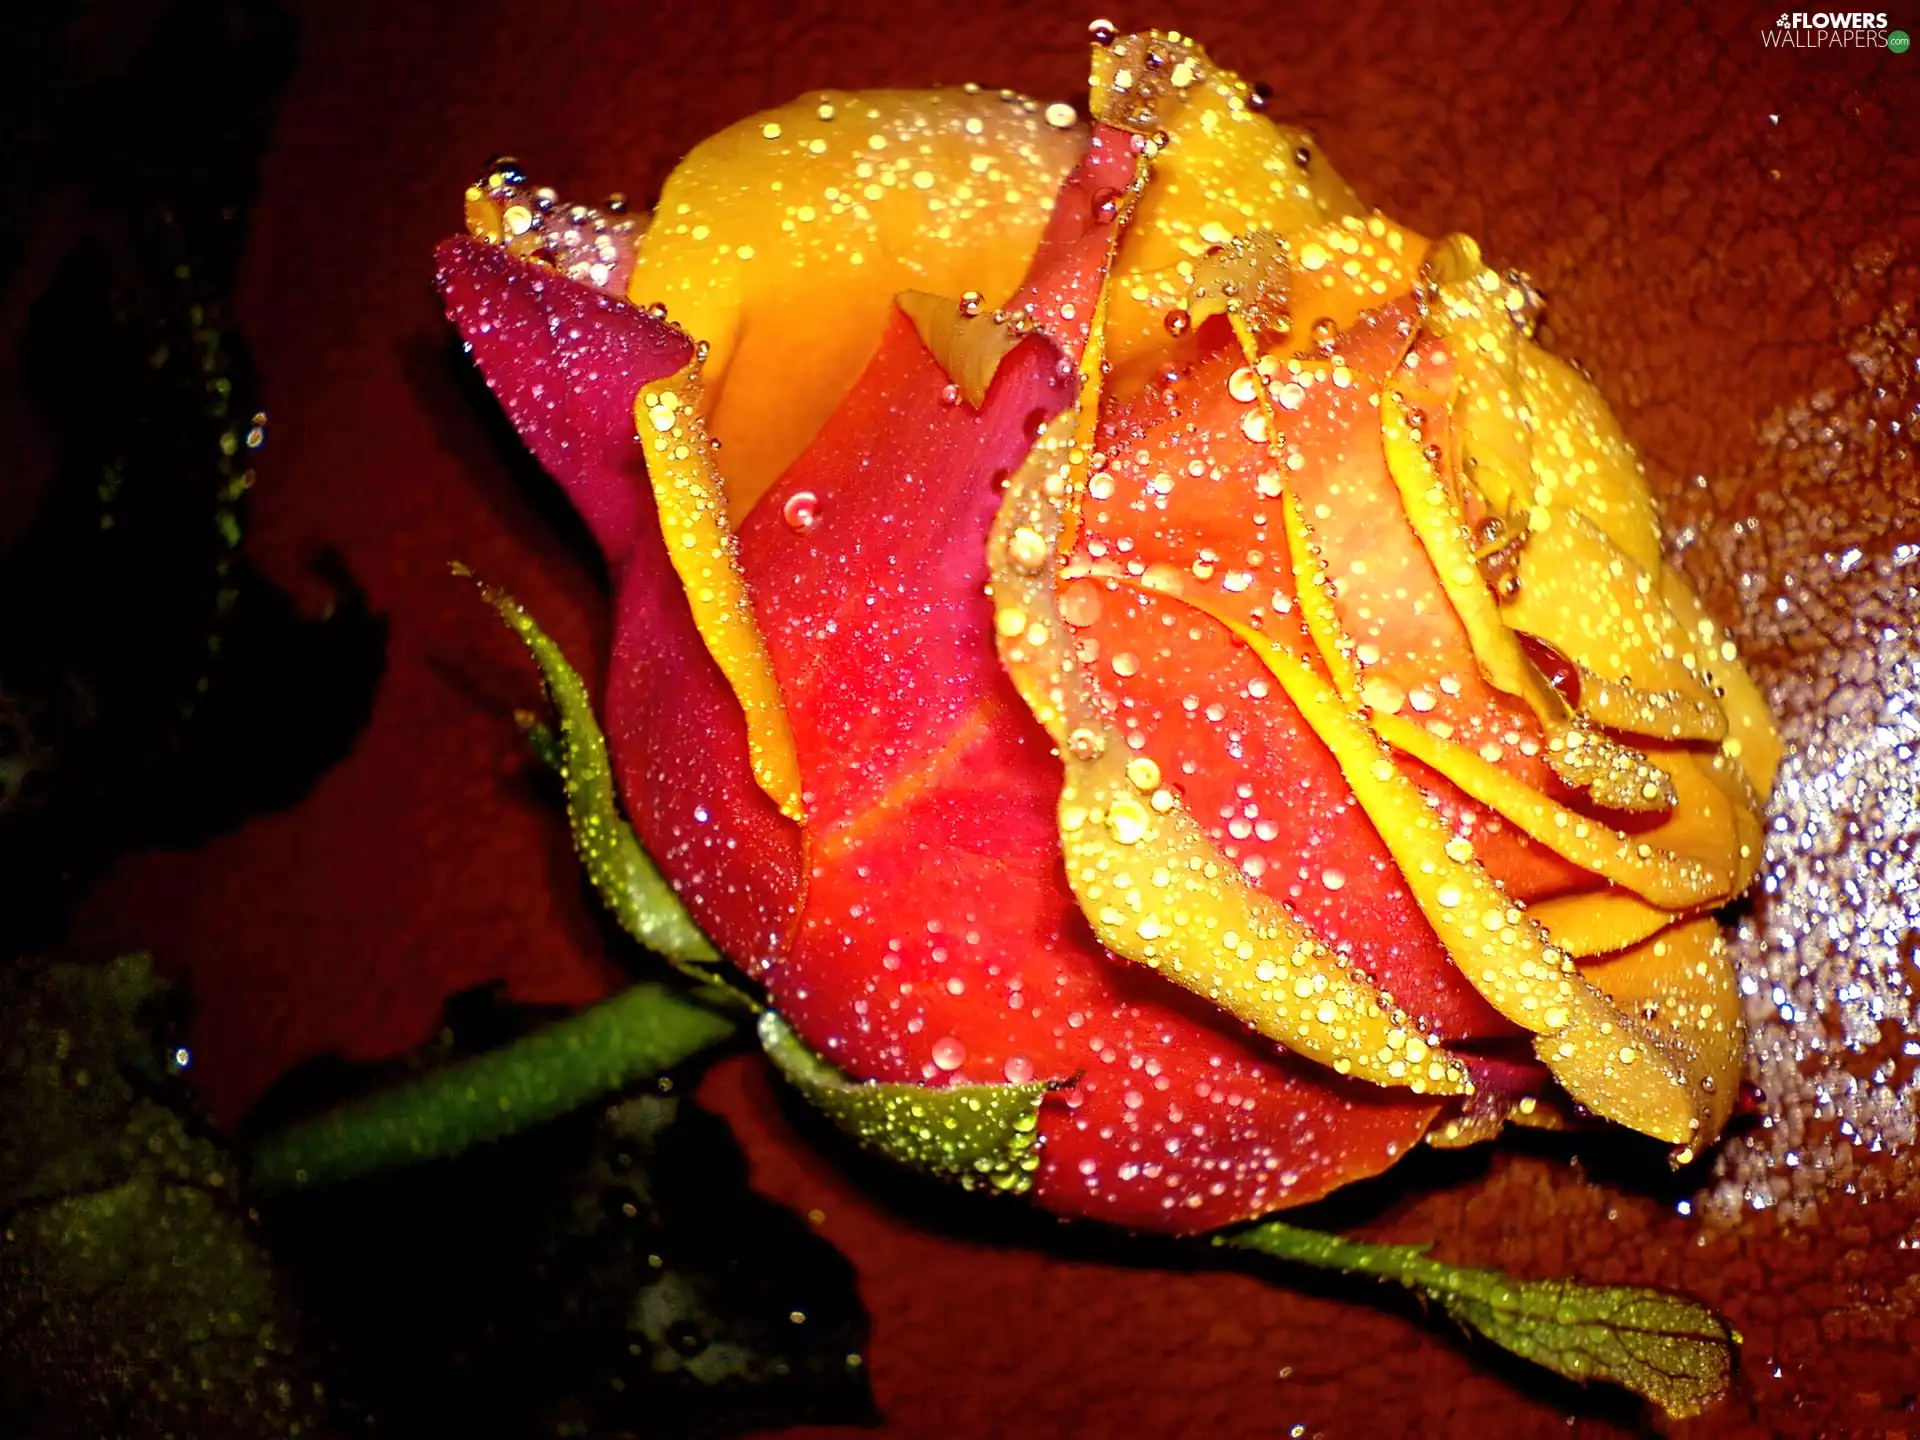 Colourfull Flowers, rose